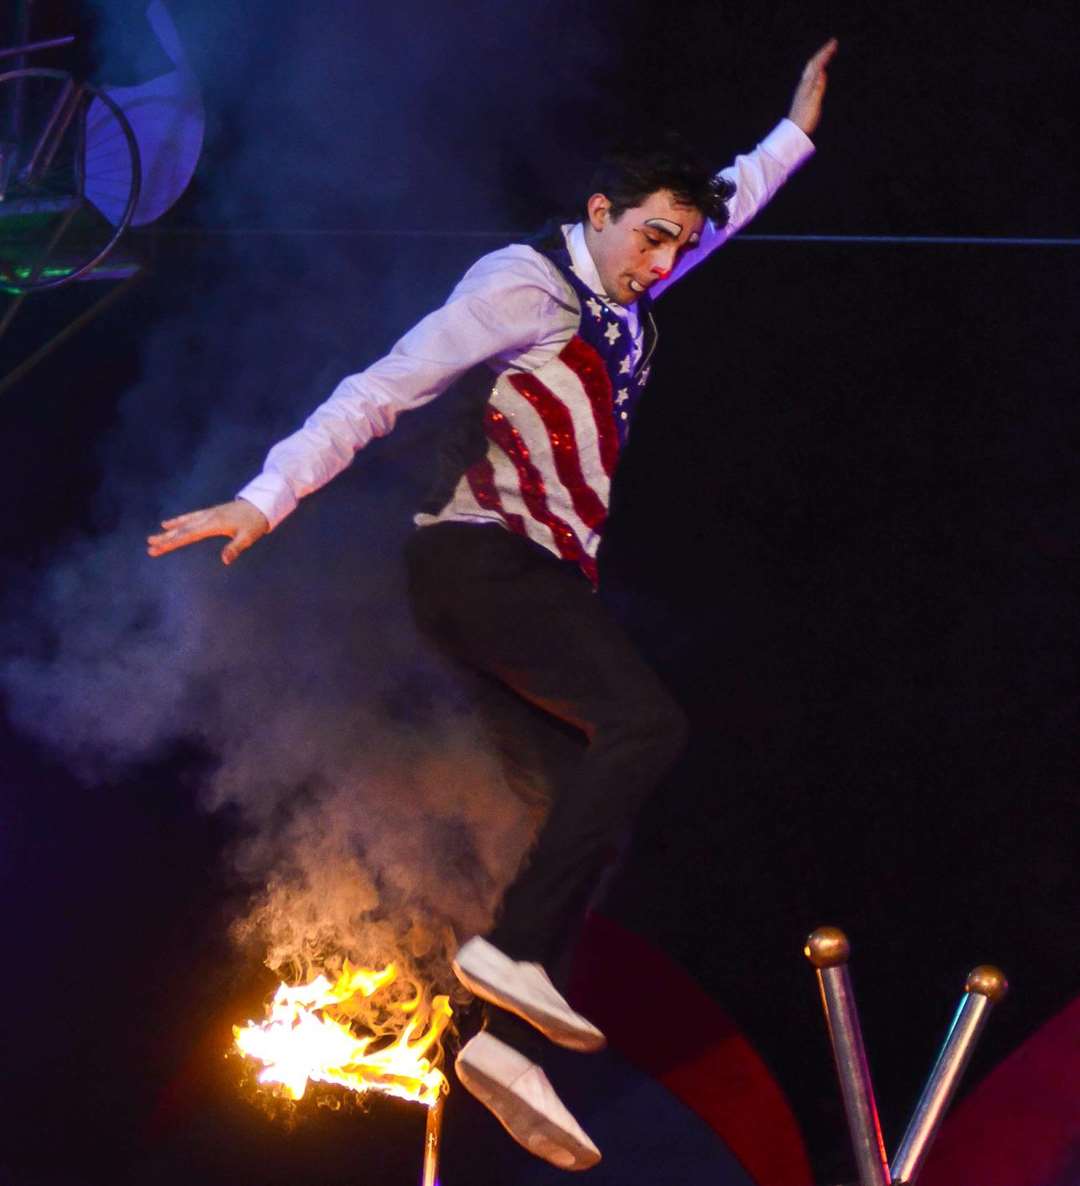 Le Cirque de France brings the family-run show to March Farm